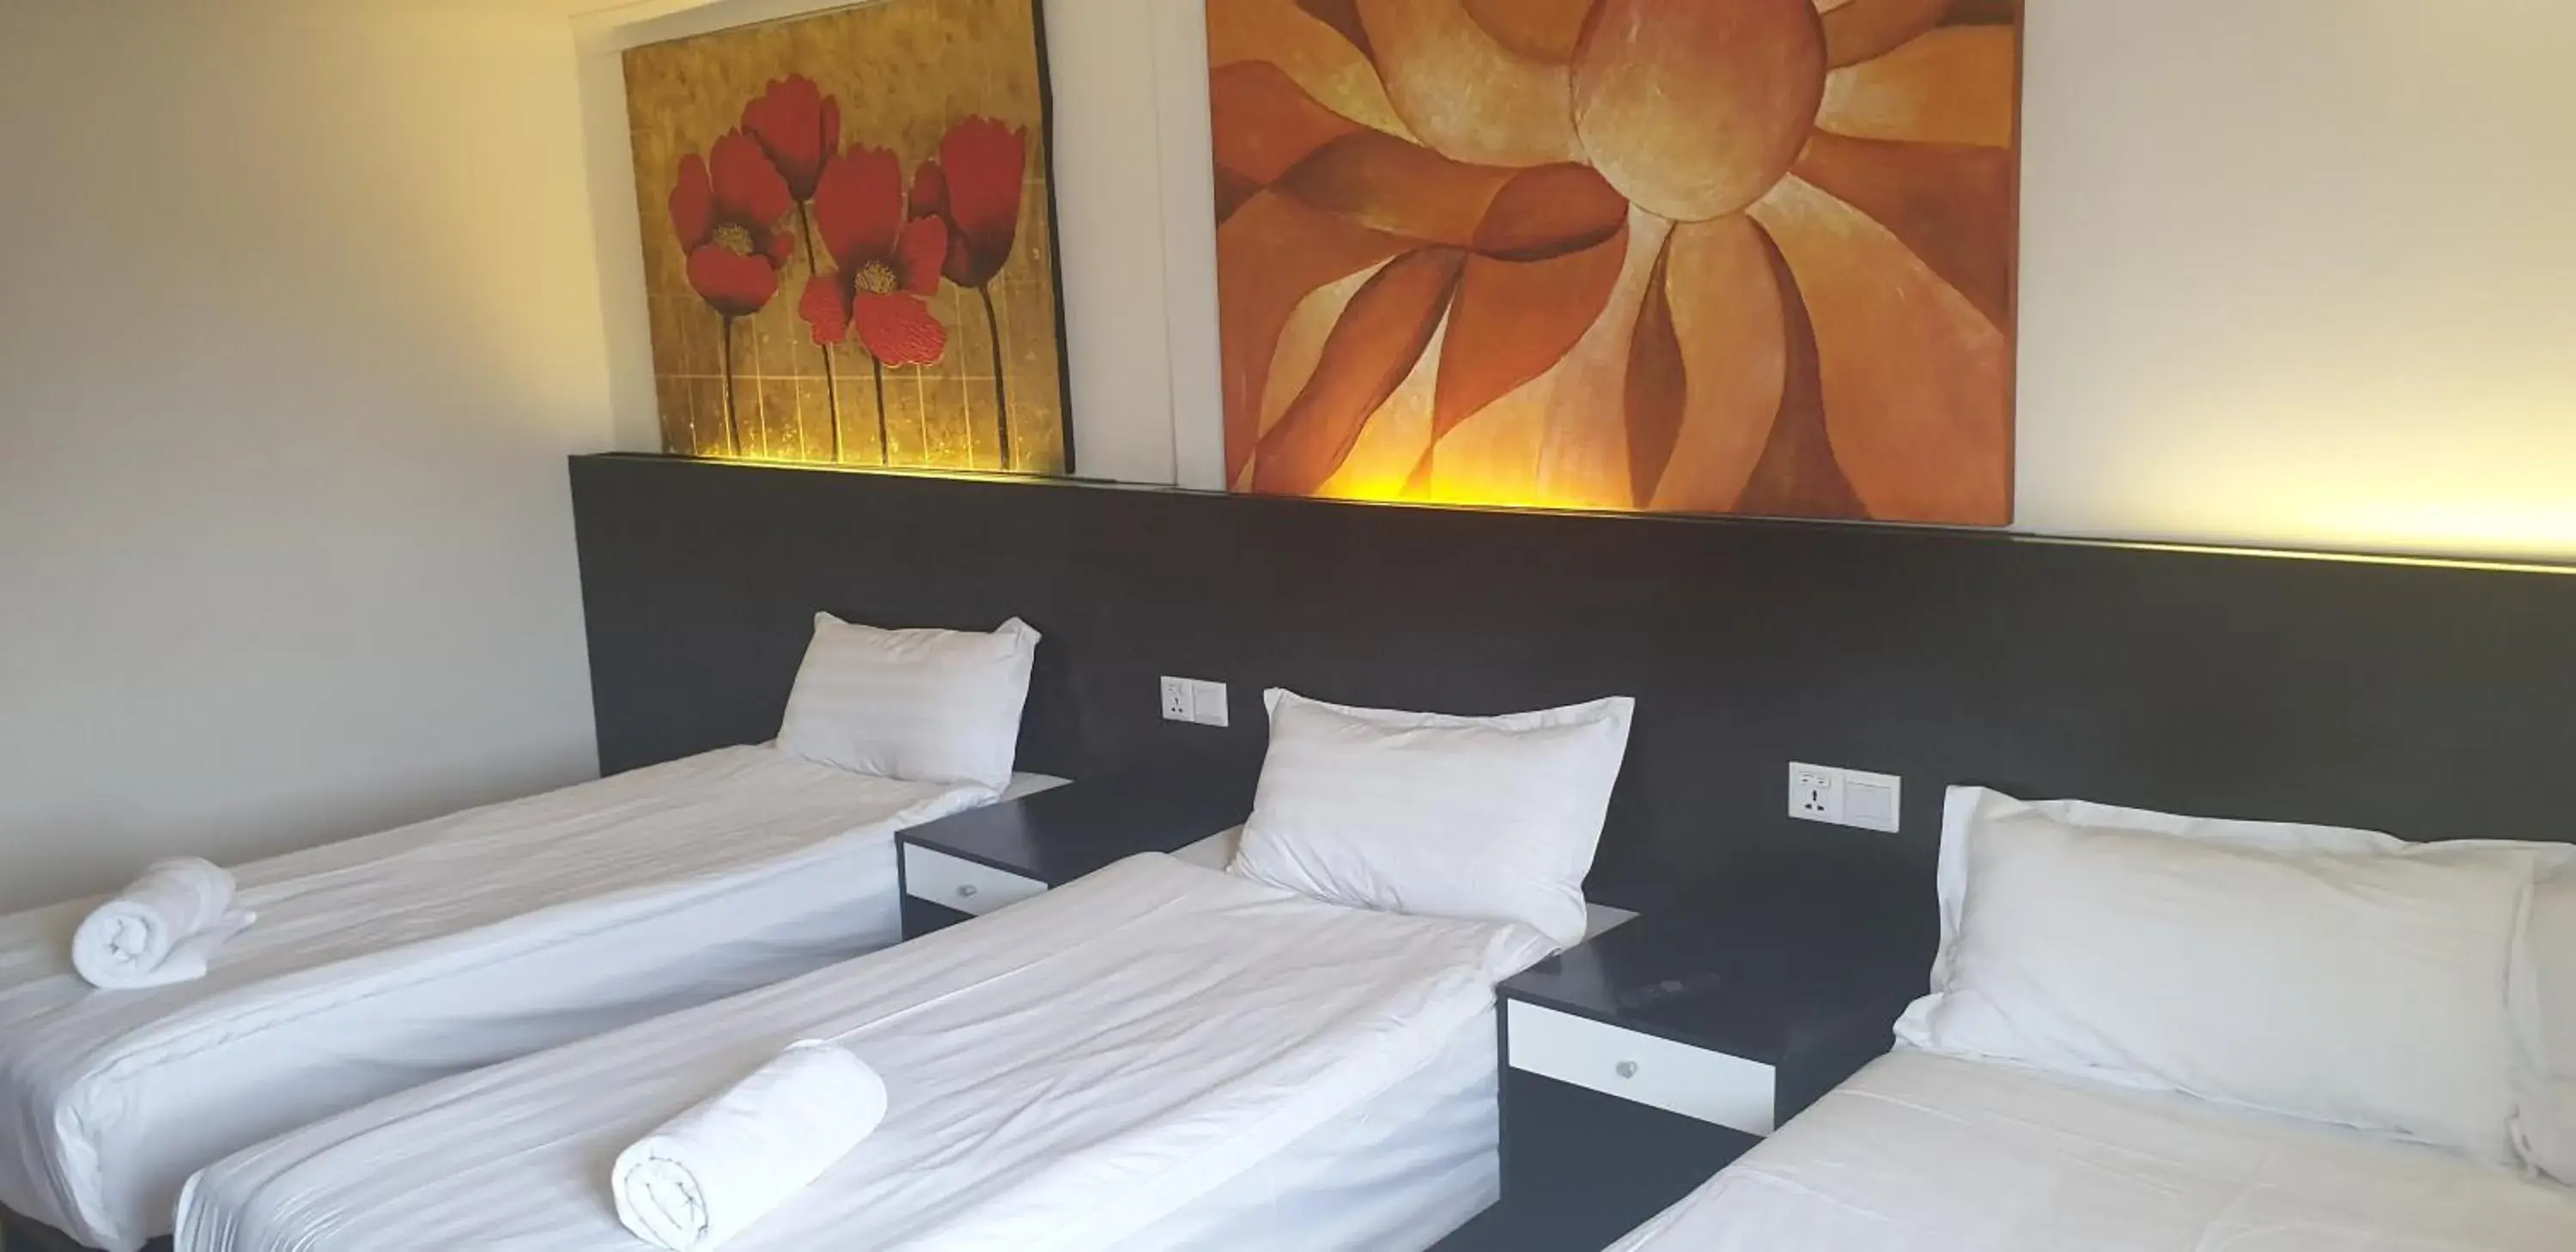 Bed in Heathrow Inn Hotel